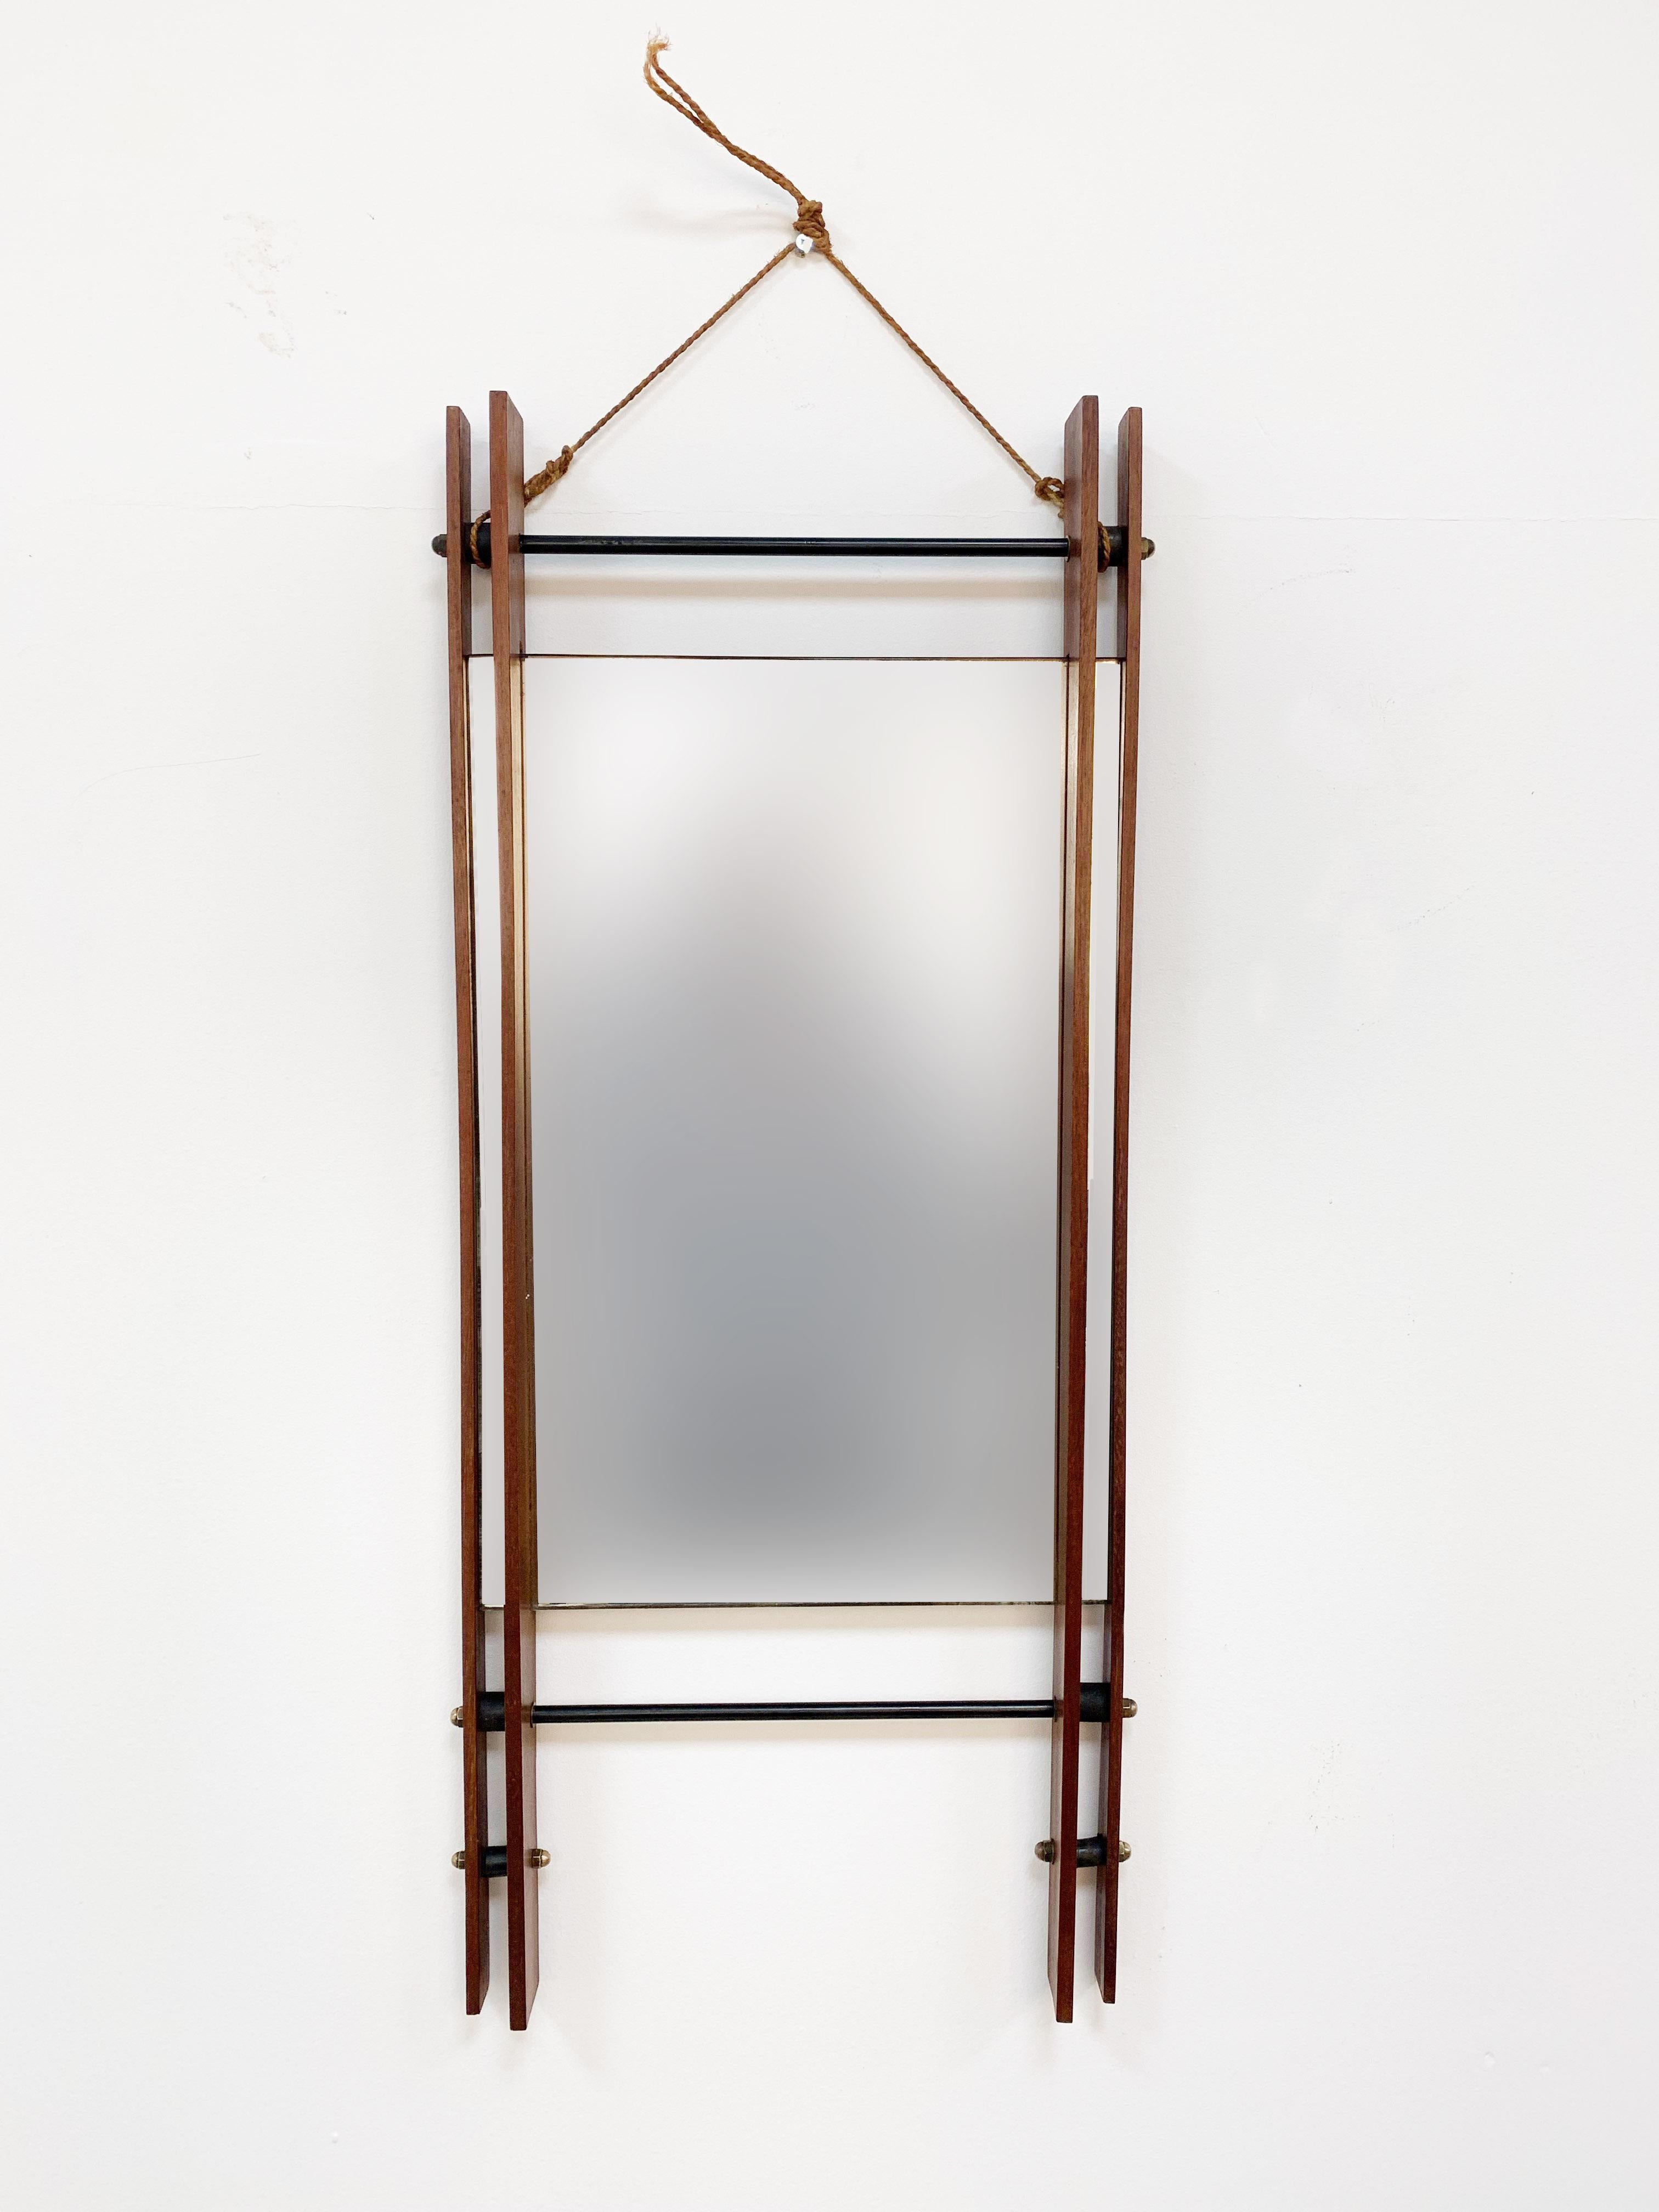 Rechteckiger Spiegel mit doppeltem Teakholzrahmen, Wandspiegel, Italien, 1950er Jahre (Seil)